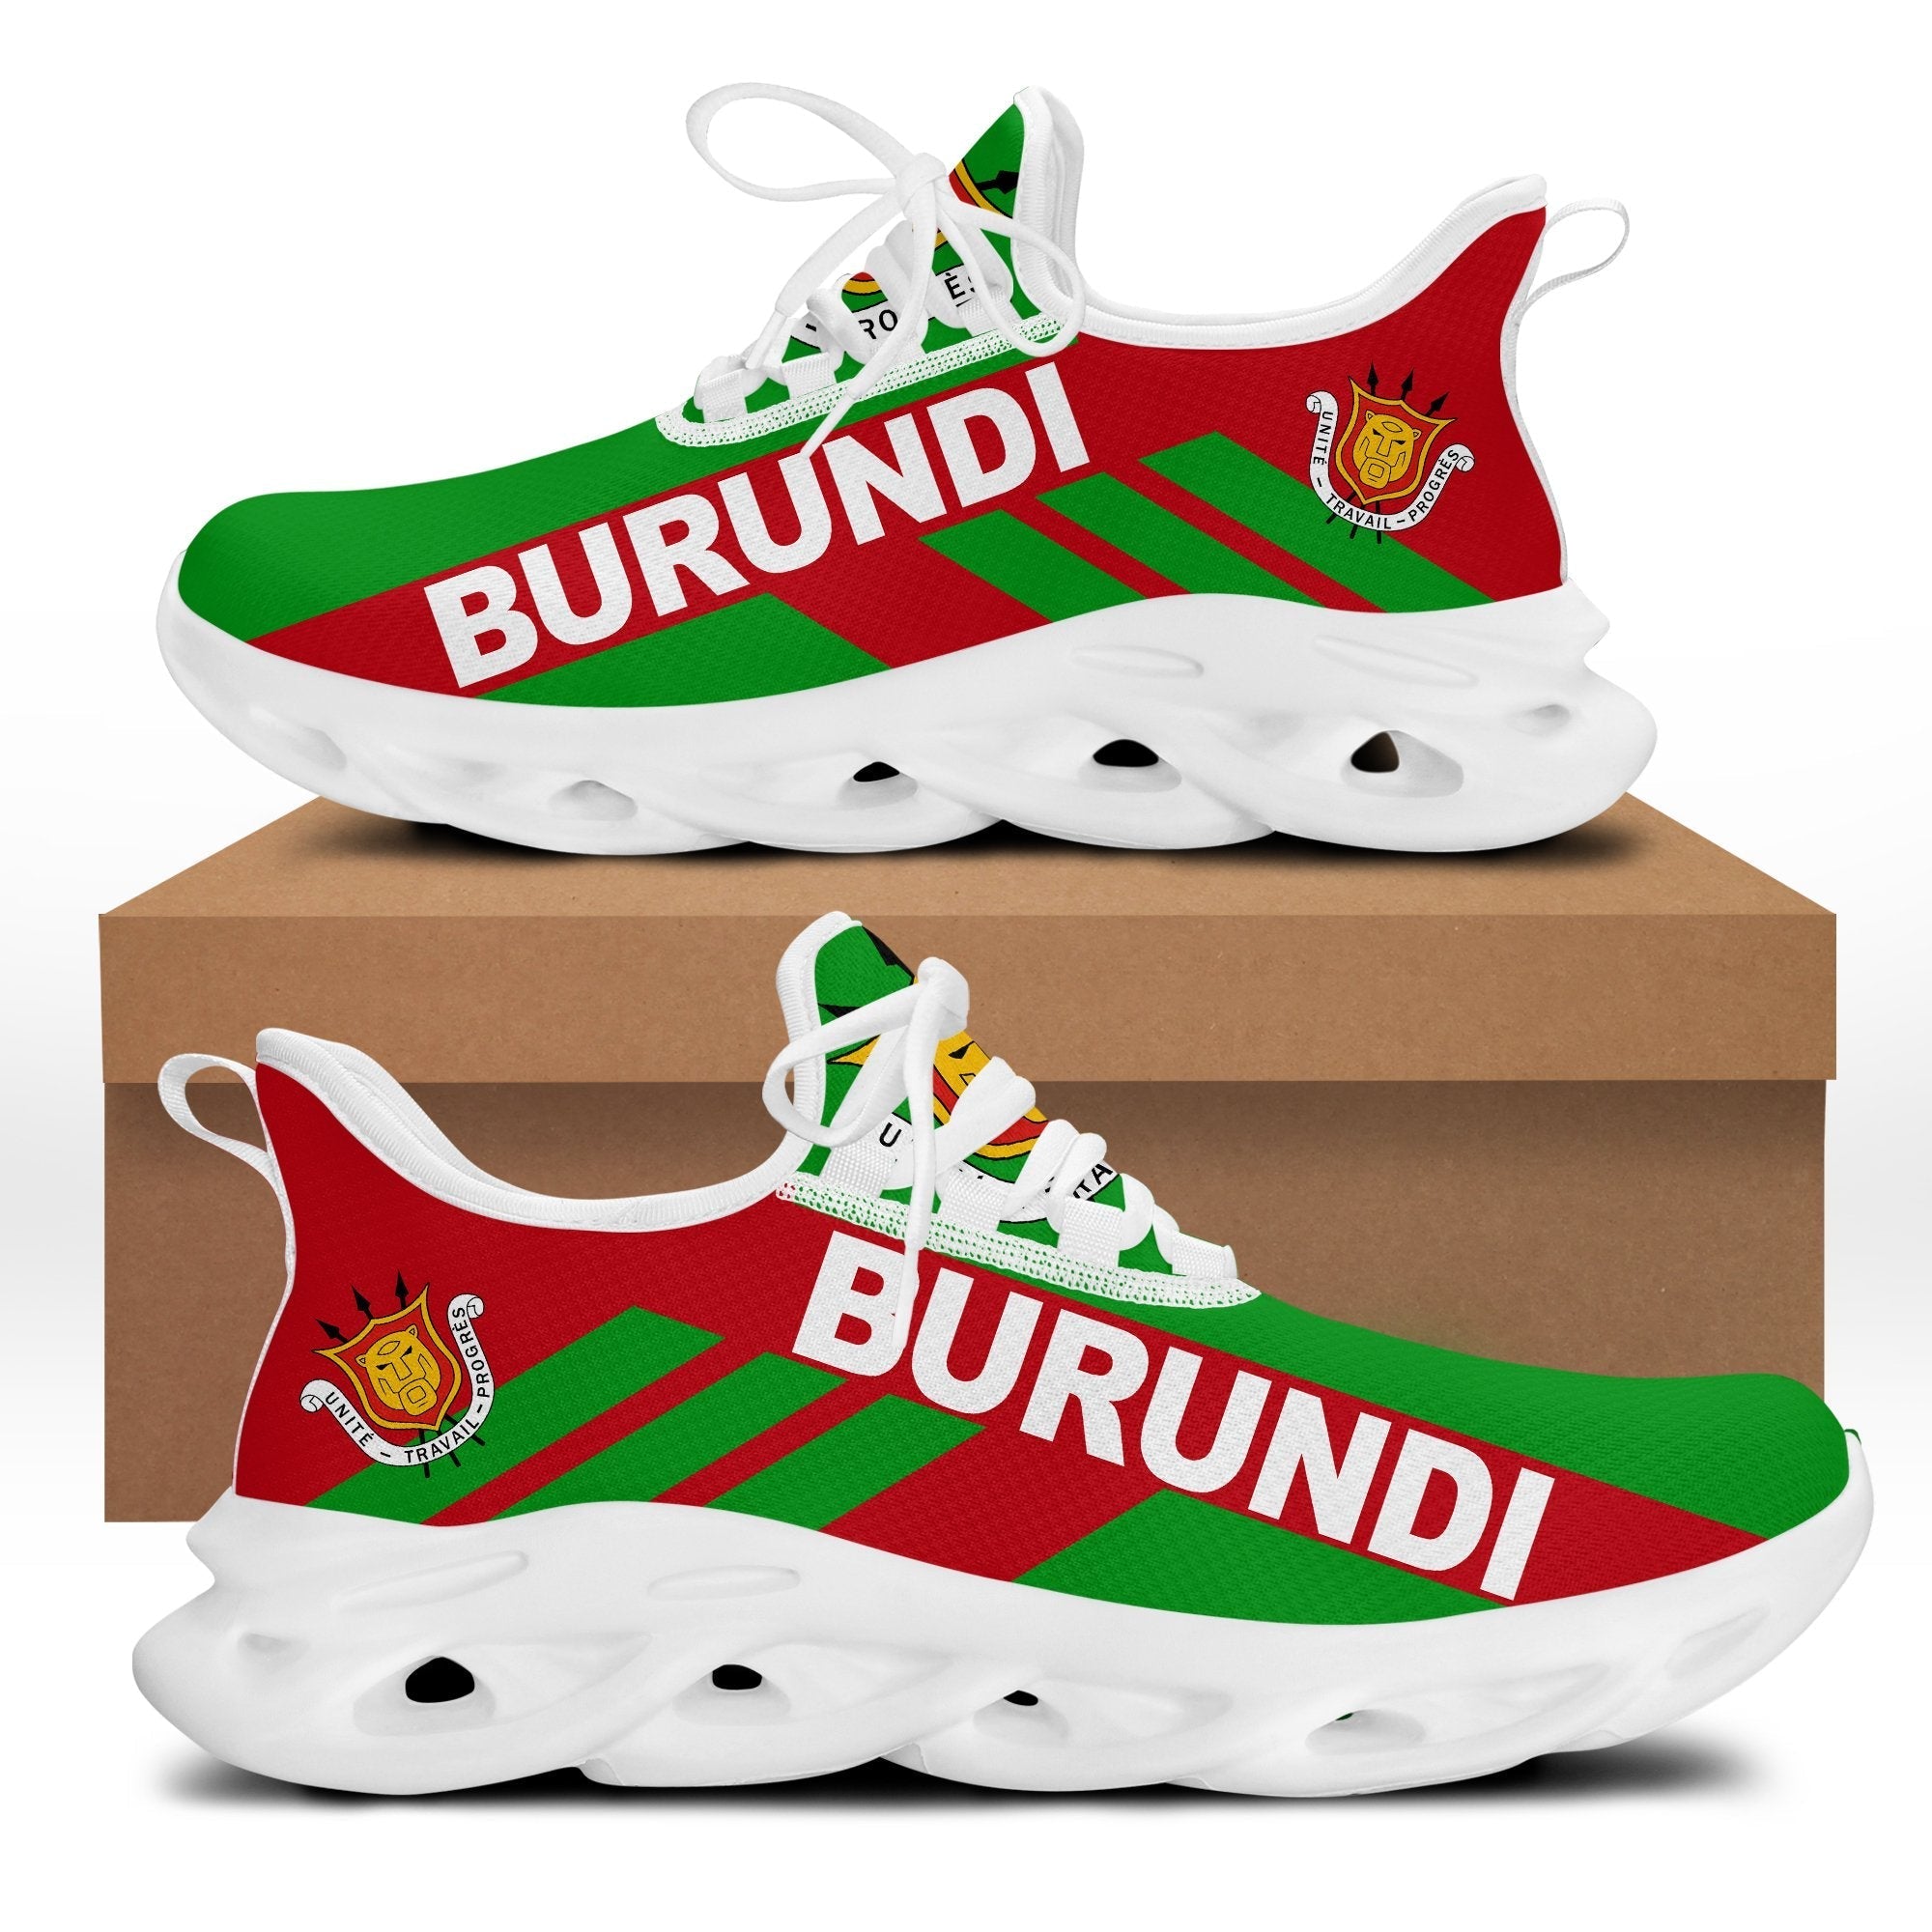 wonder-print-shop-footwear-burundi-stripe-style-clunky-sneakers